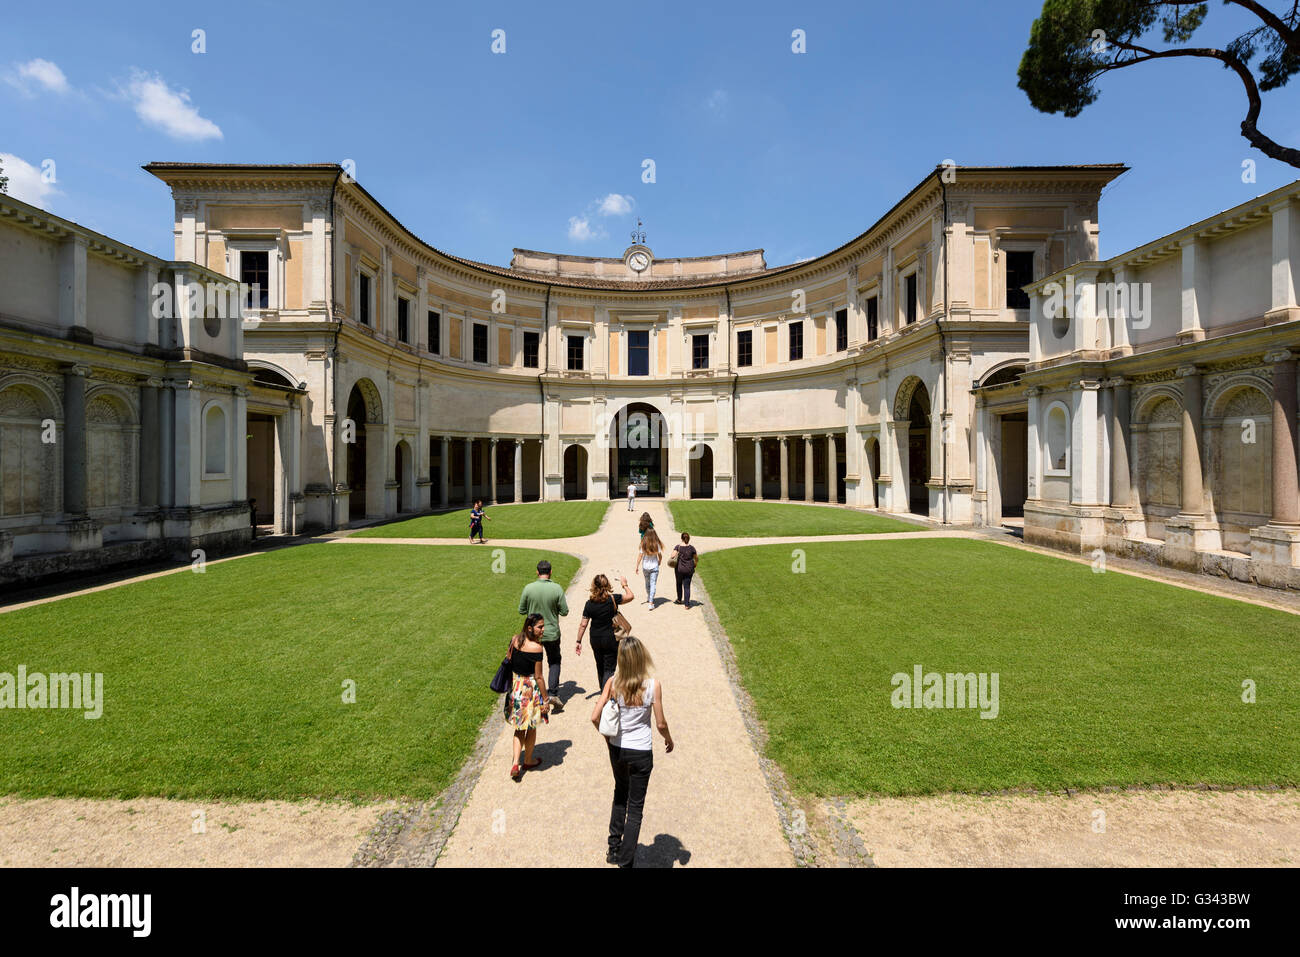 Rom. Italien. Villa Giulia, 1551-1553, die halbrunde Loggia gebaut. Heute beherbergt die Villa Etruskischen Nationalmuseum. Stockfoto